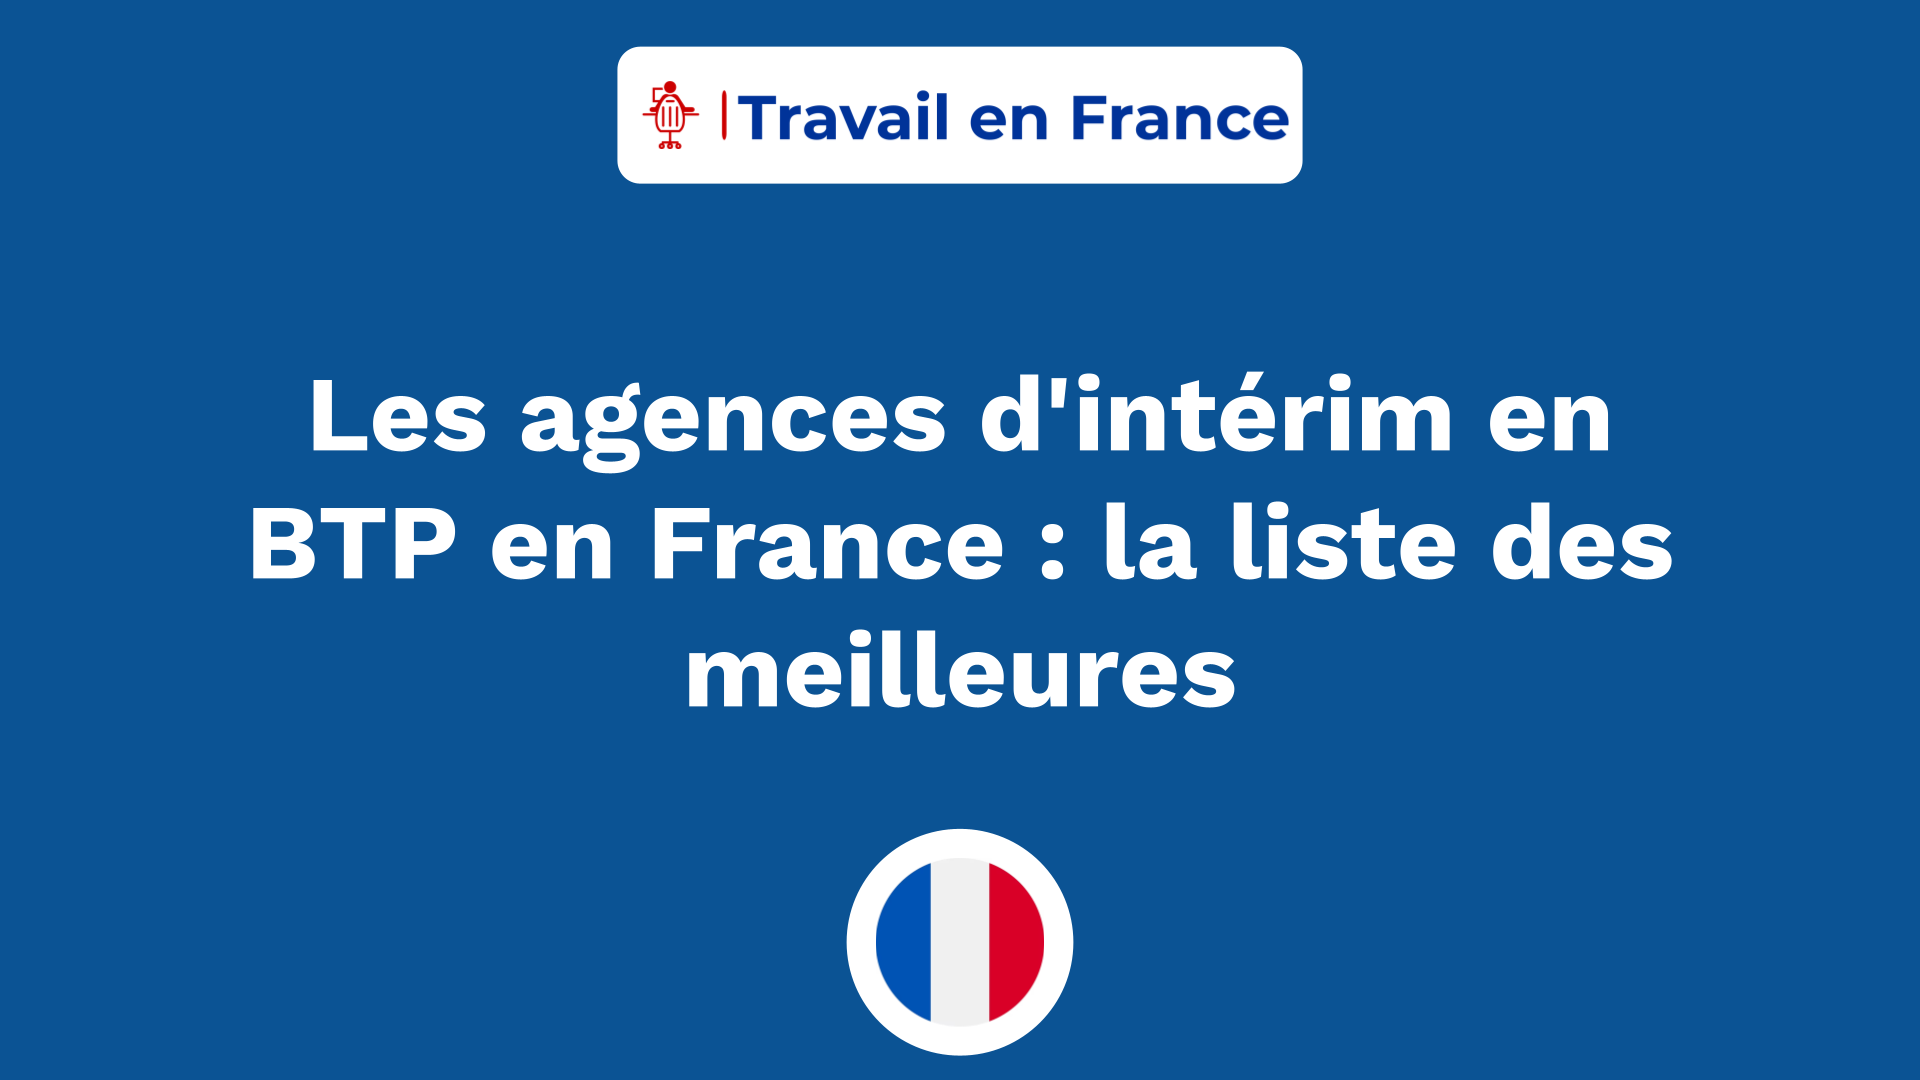 Les agences d'intérim en BTP en France ! la liste des meilleures